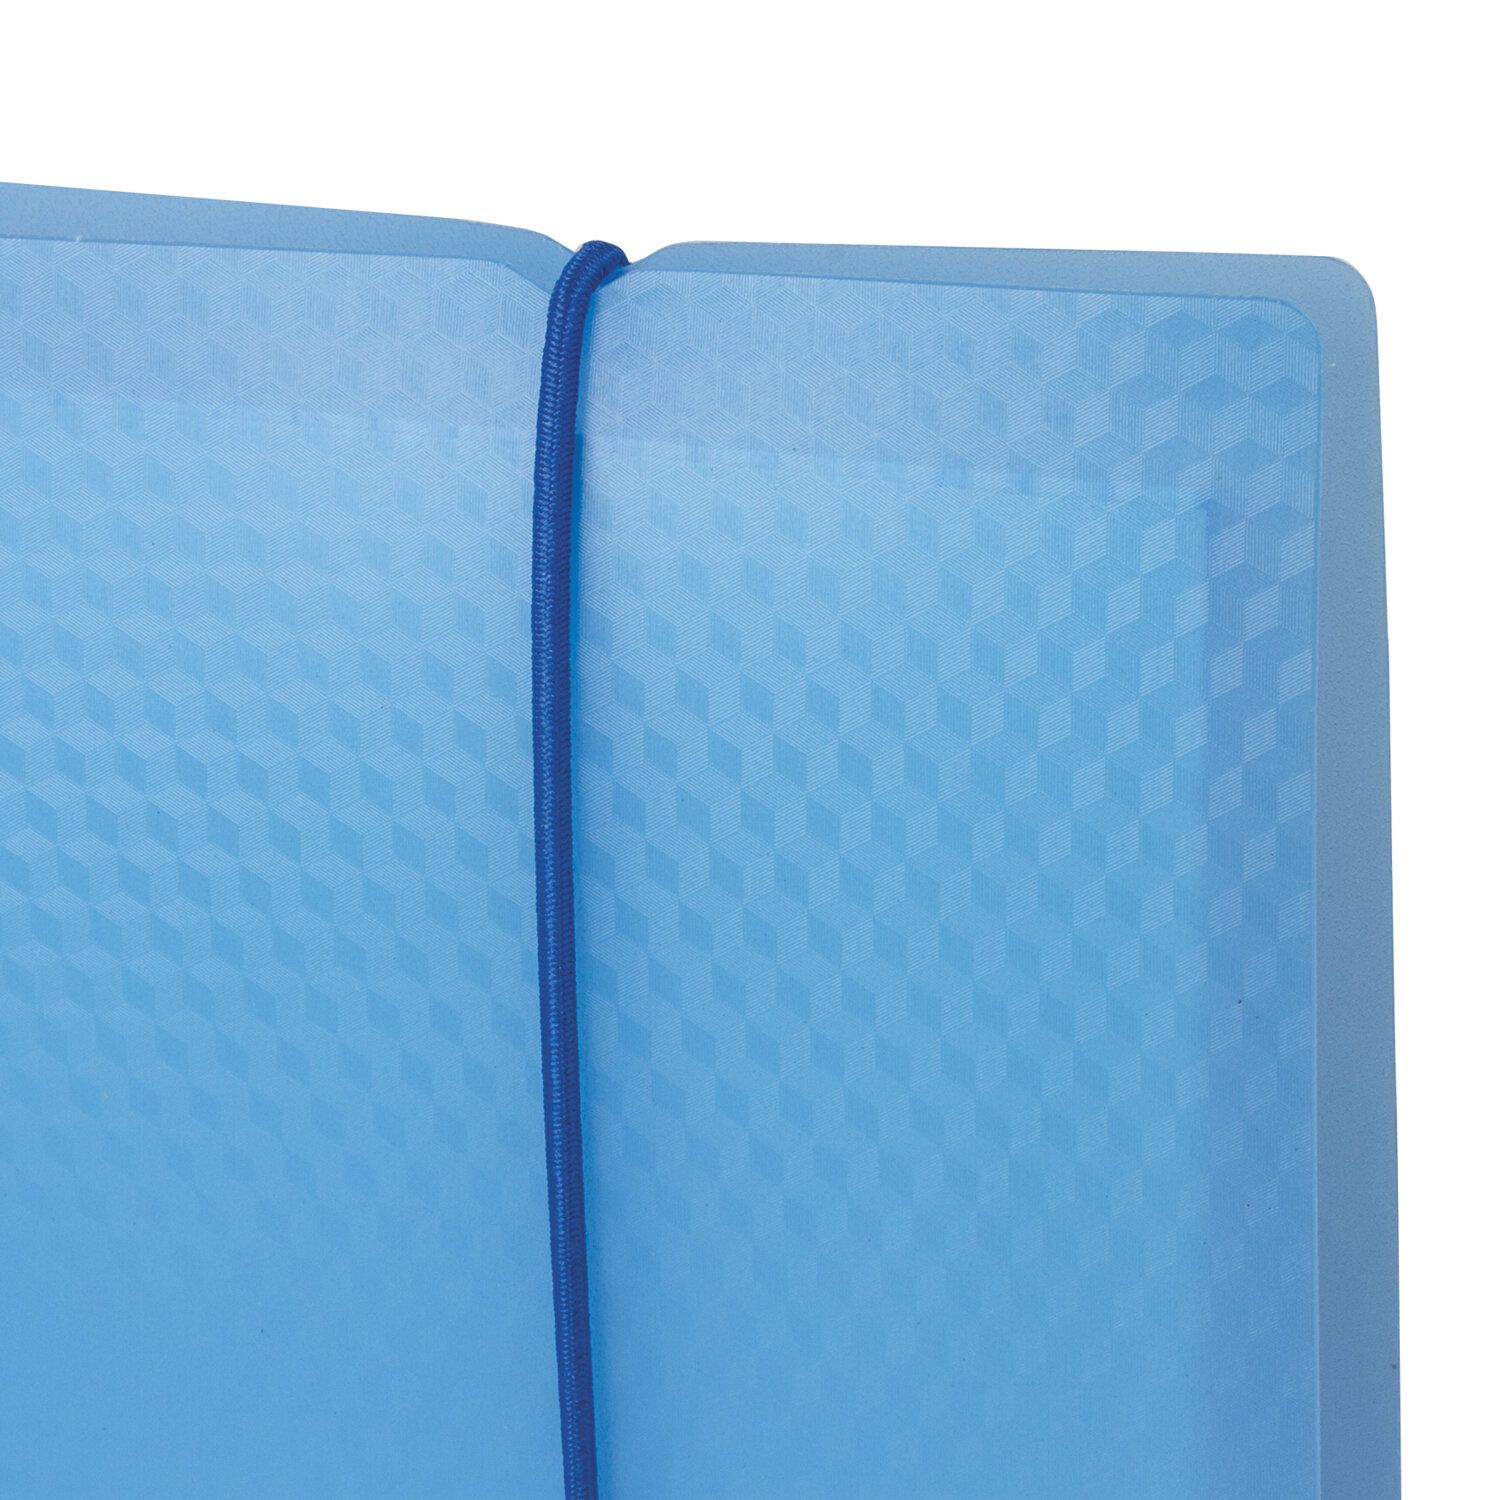 Тетрадь на кольцах А5 (175х220 мм),403567 120 л., пластиковая обложка, клетка, с фиксирующей резинкой, BRAUBERG, синяя, 403567